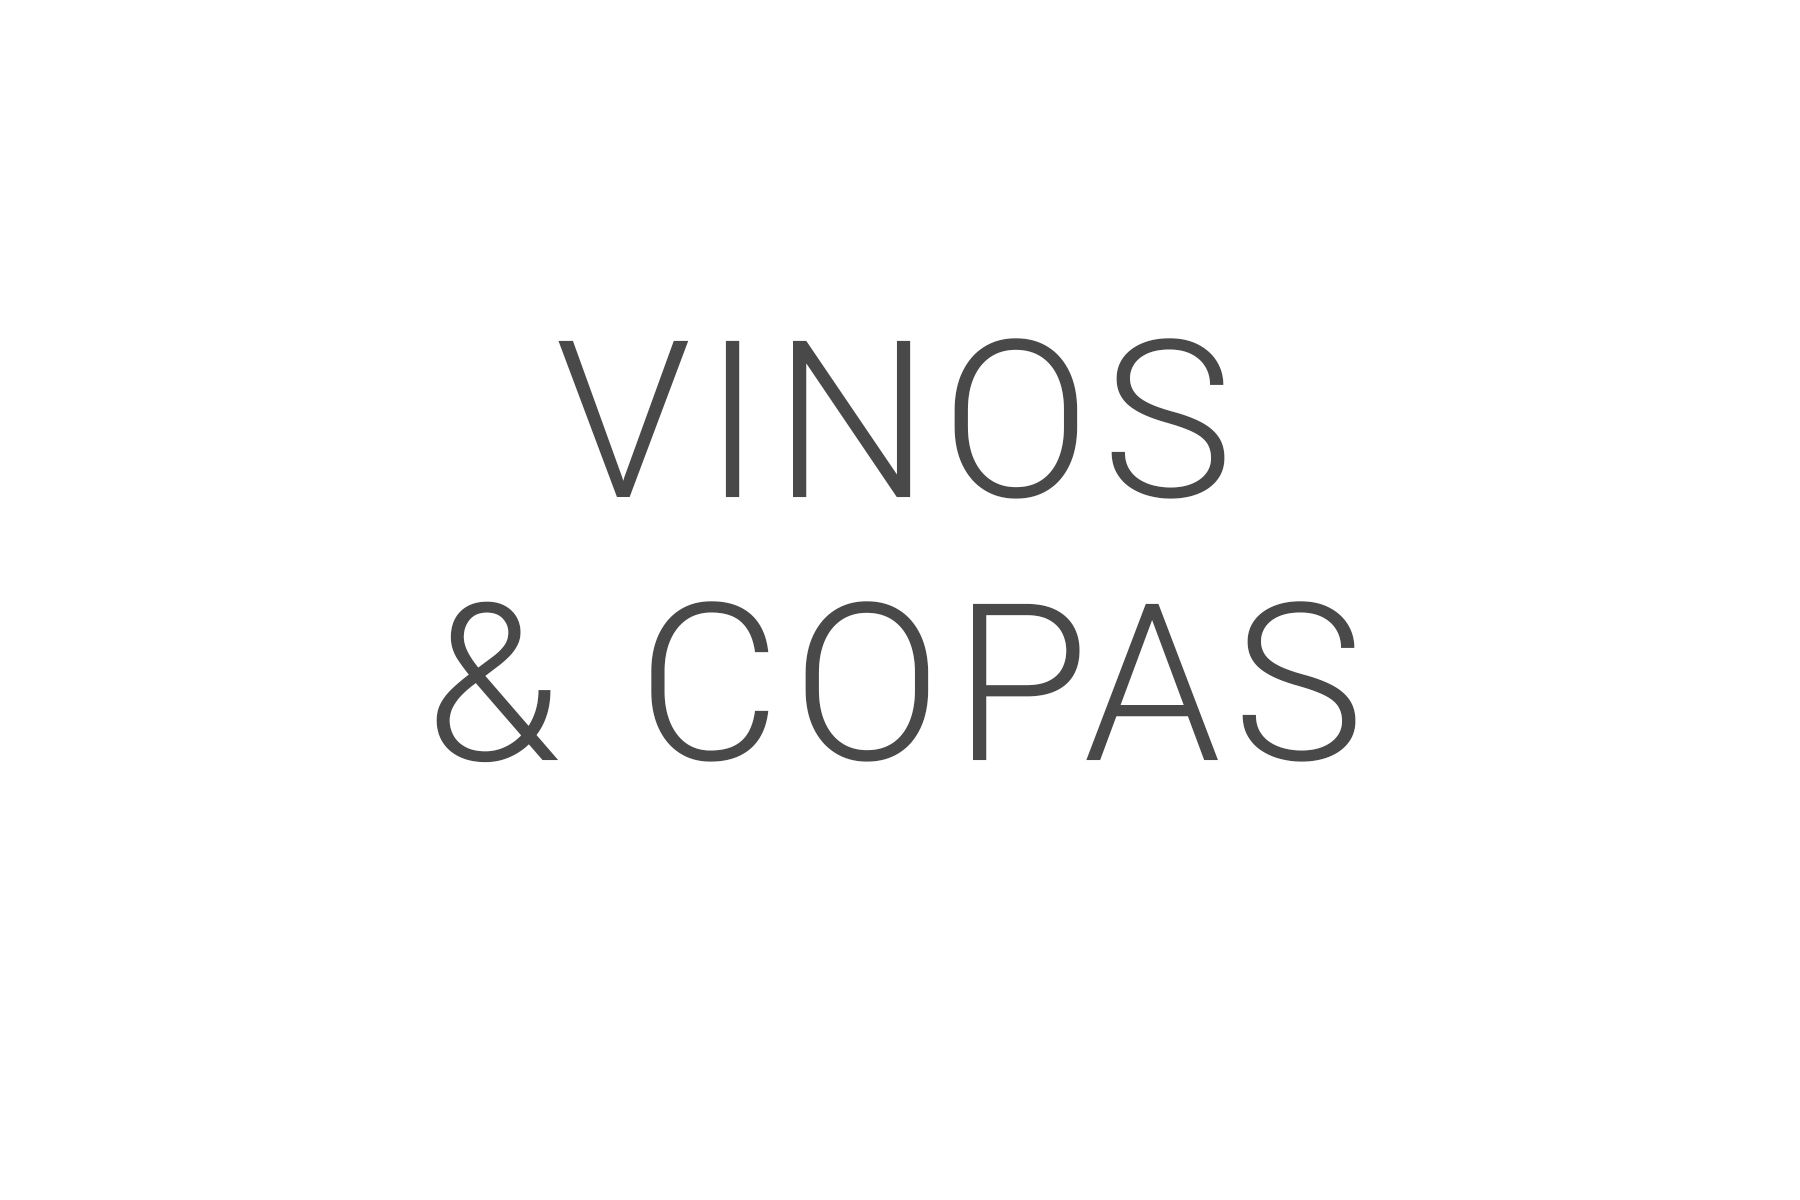 Vinos & copas Cocolinda Alameda 14